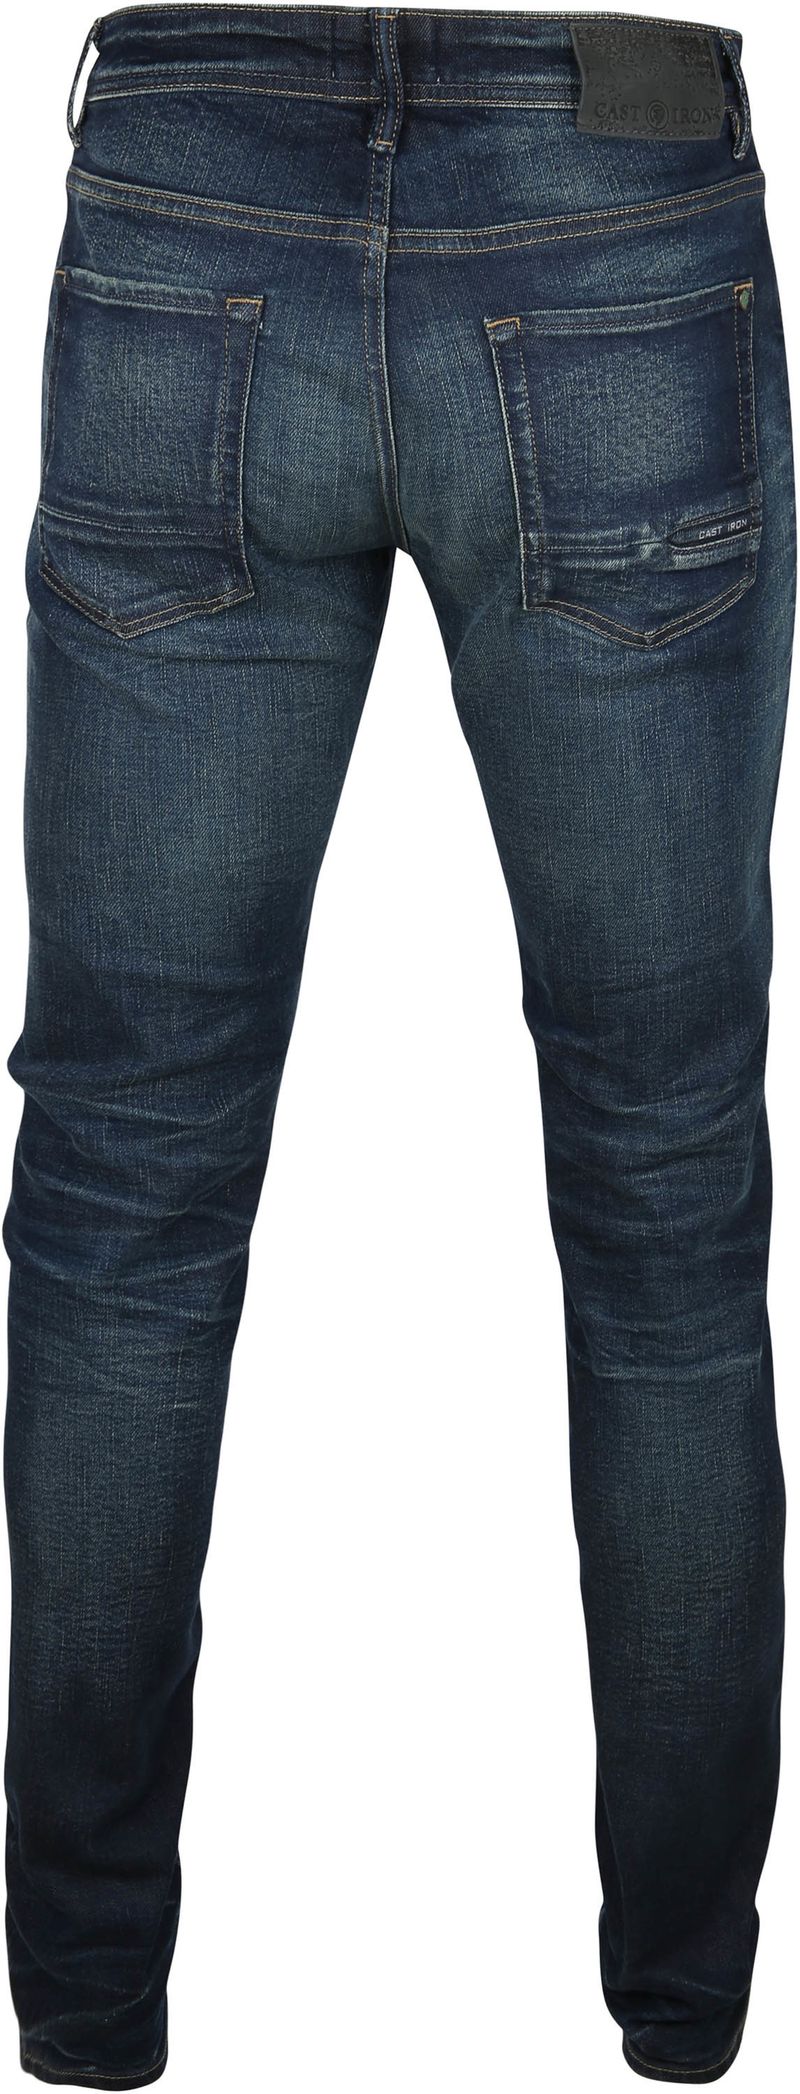 Cast Iron Korbin Jeans Washed Dunkelblau - Größe W 31 - L 32 günstig online kaufen